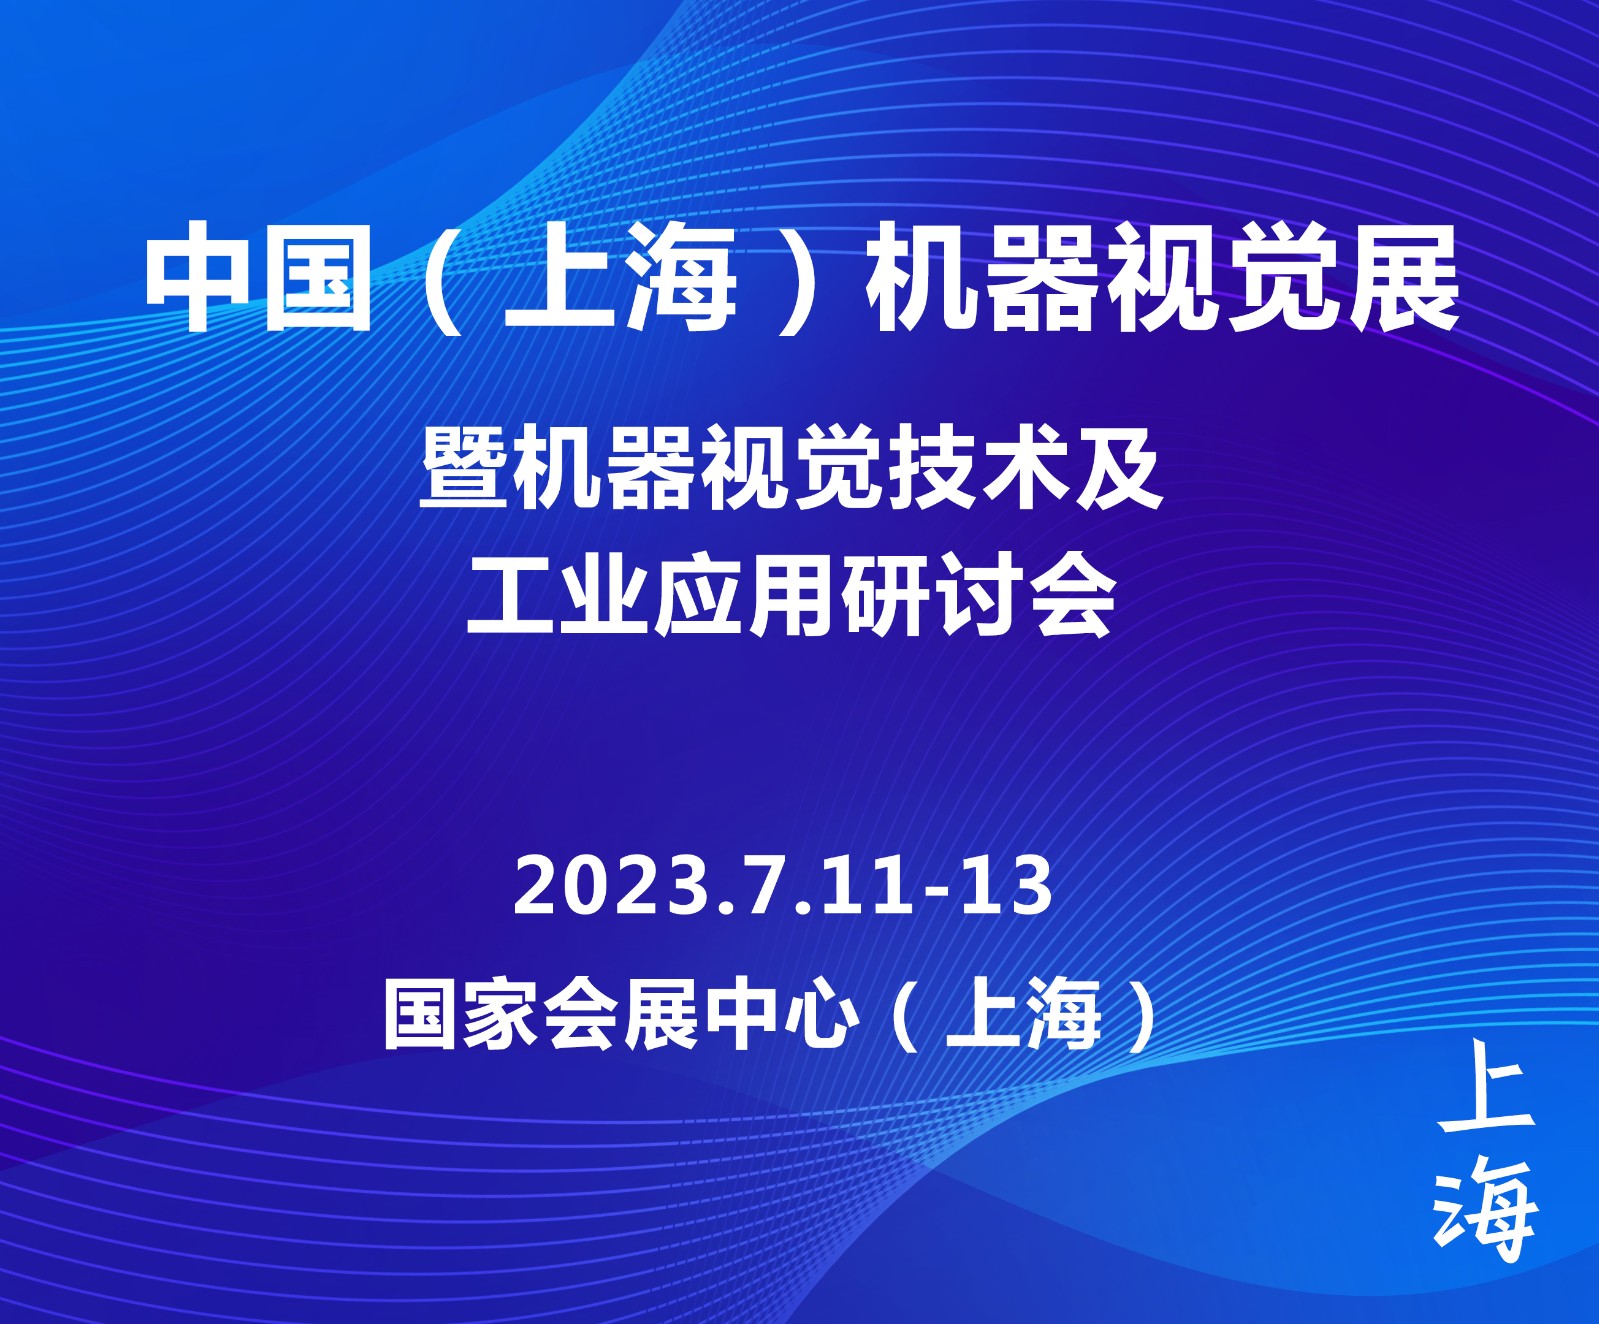 2022上海机器视觉展